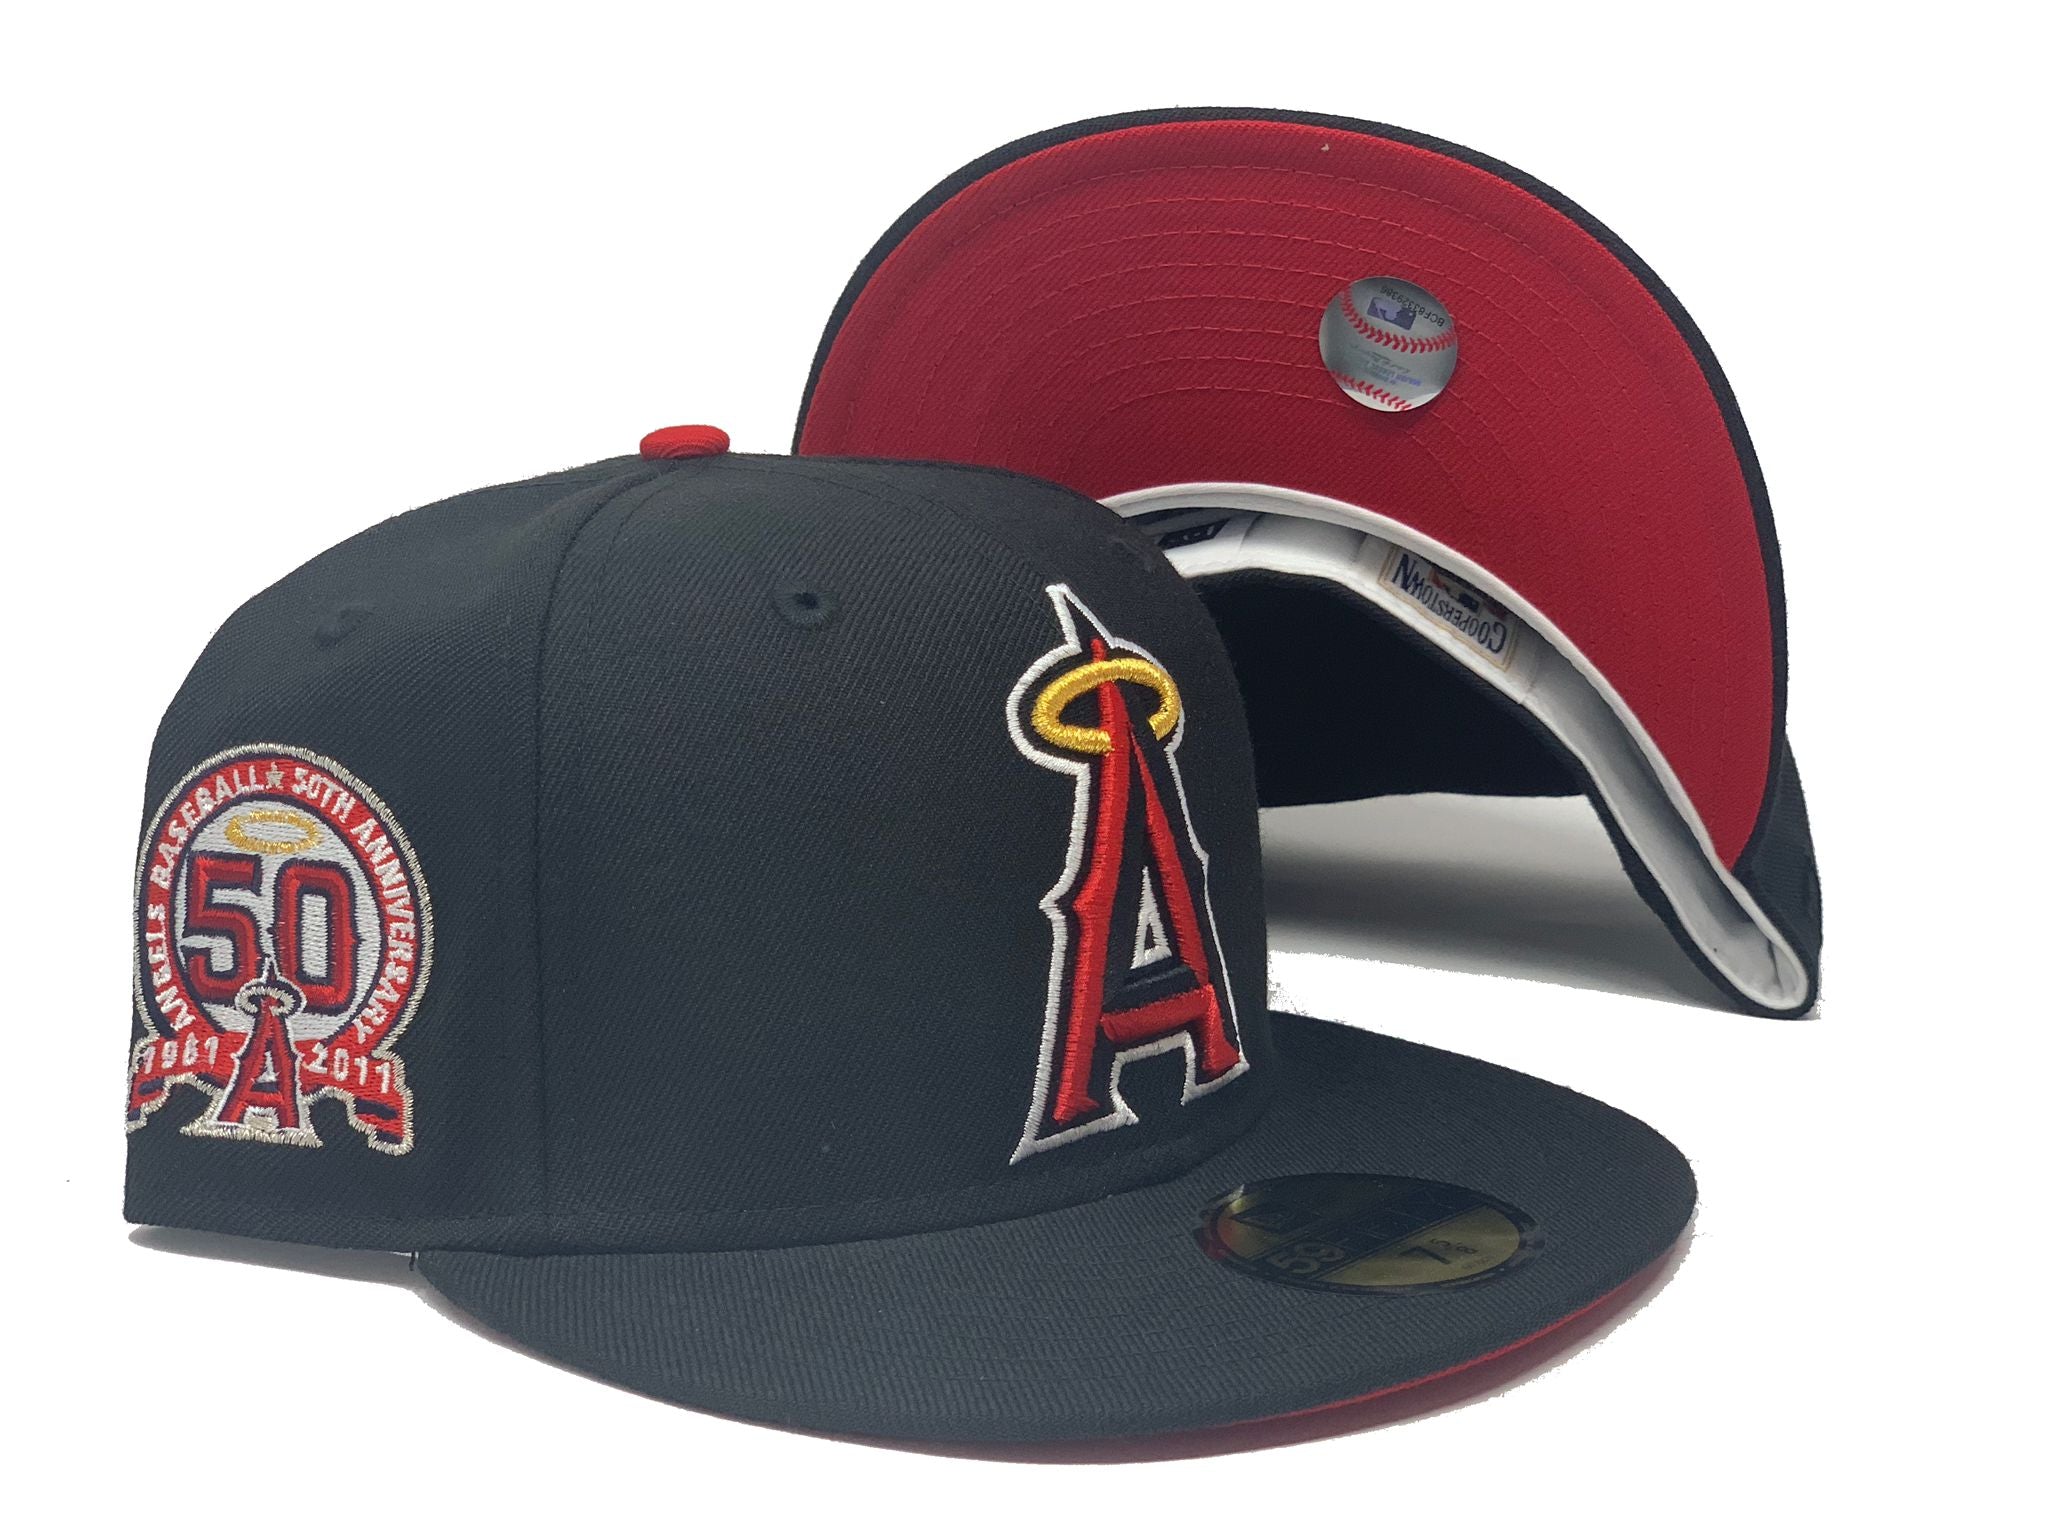 Los Angeles Angels Hats in Los Angeles Angels Team Shop 